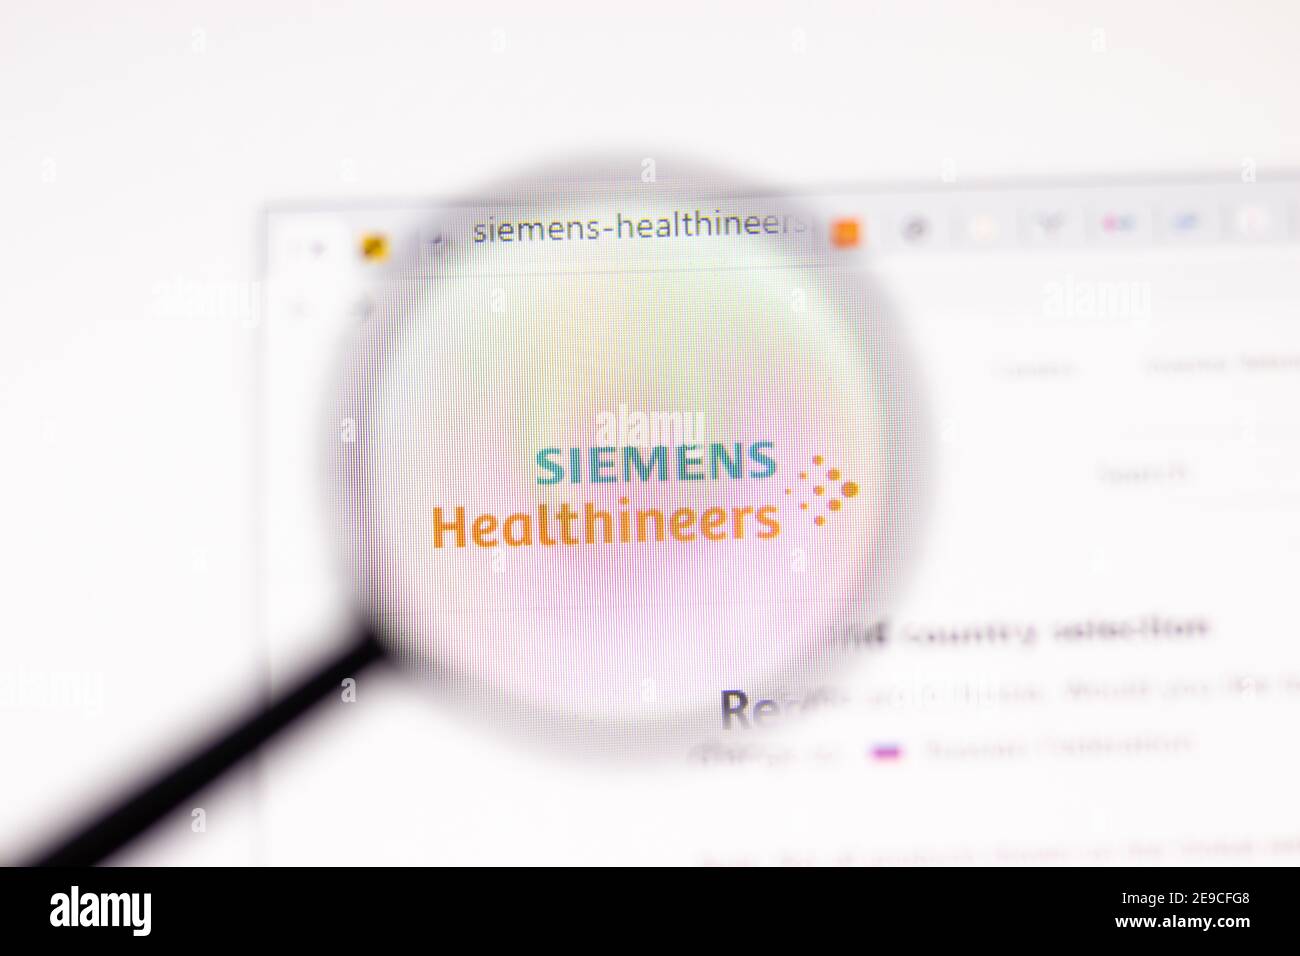 Los Angeles, Etats-Unis - 1 février 2021 : page du site de Siemens Healthineers. Siemens-Healthineers.com logo sur l'écran, illustration Editorial Banque D'Images